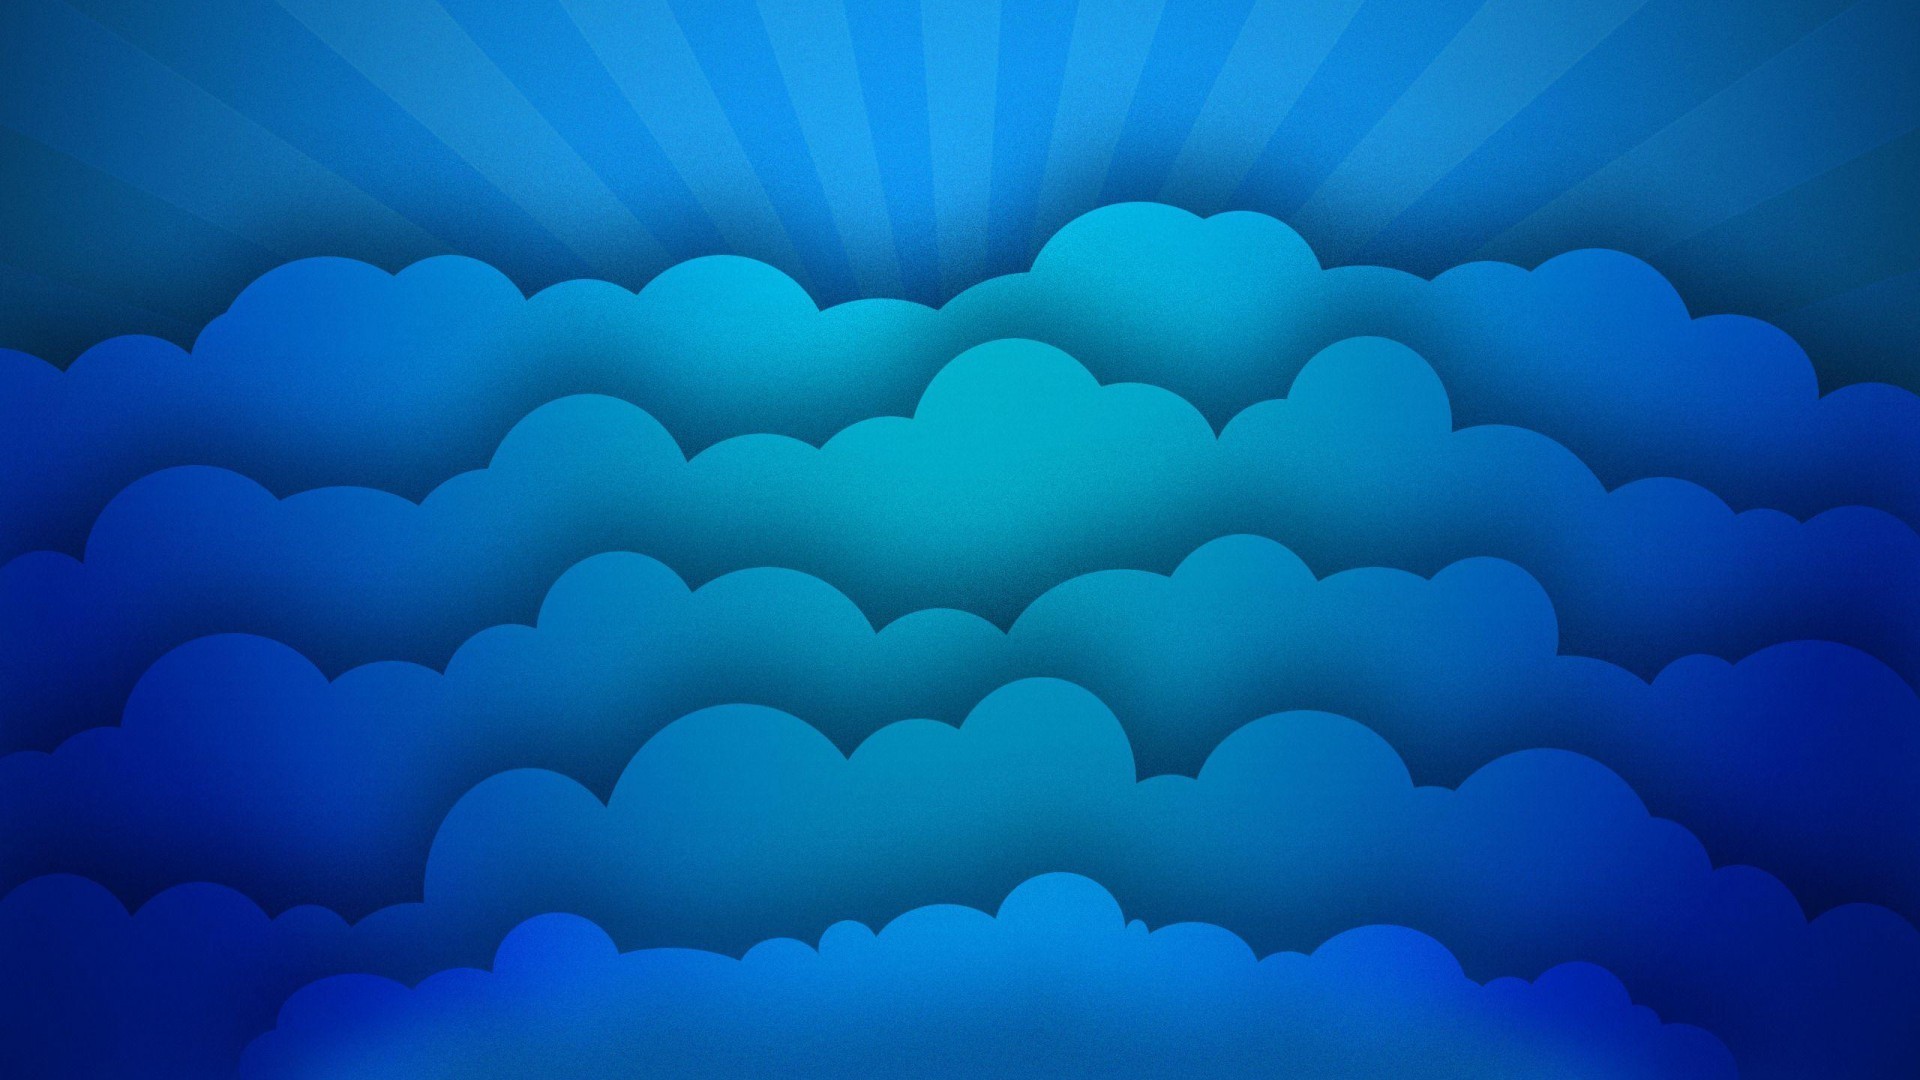 General 1920x1080 digital art minimalism clouds blue imagination sun rays